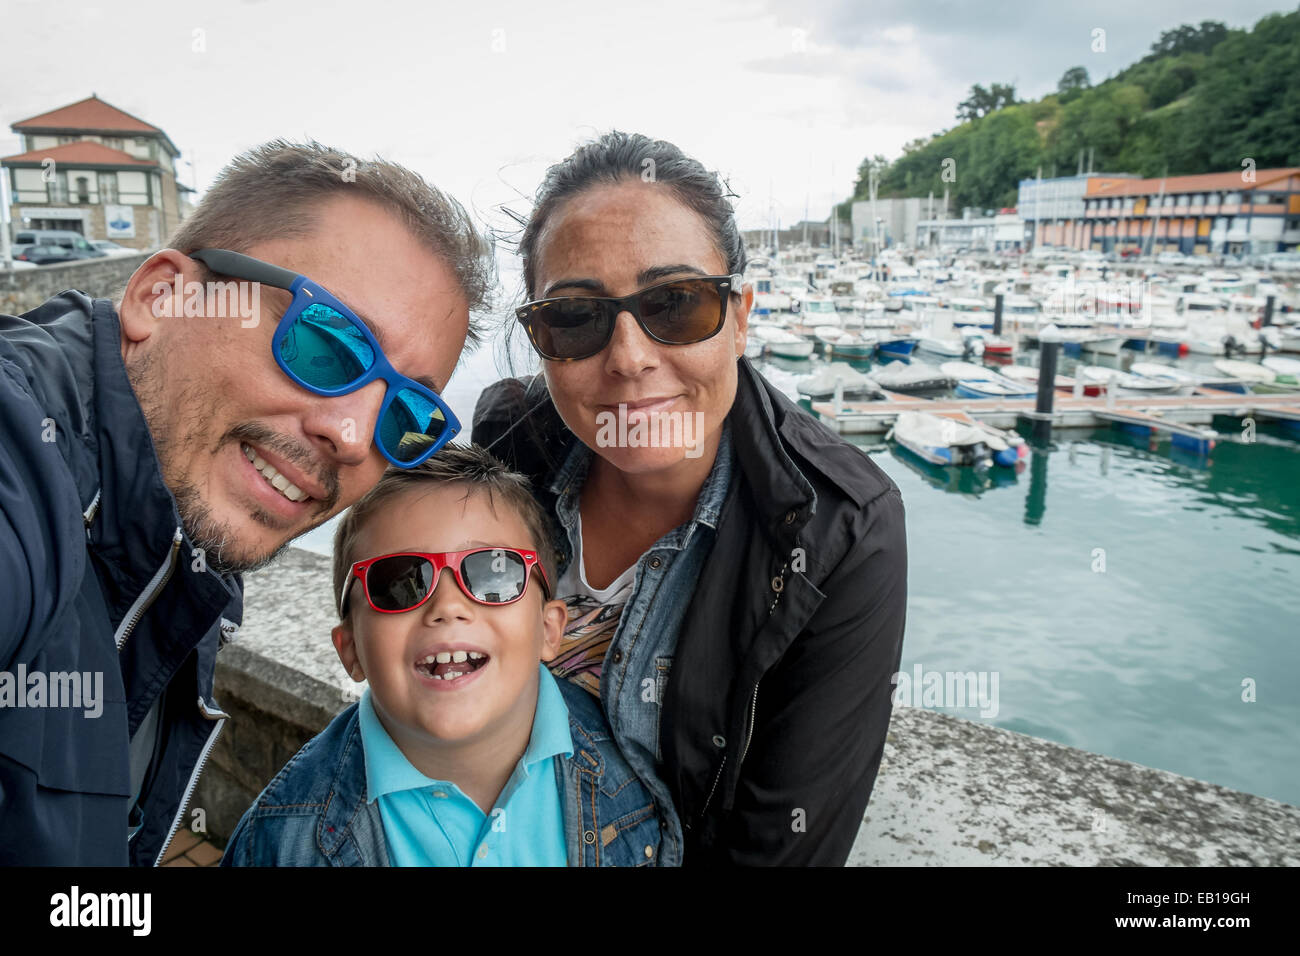 Familie Spaß Sonnenbrille & winkt eine Kamera unter Selfie fotografieren im Sommerurlaub Stockfoto